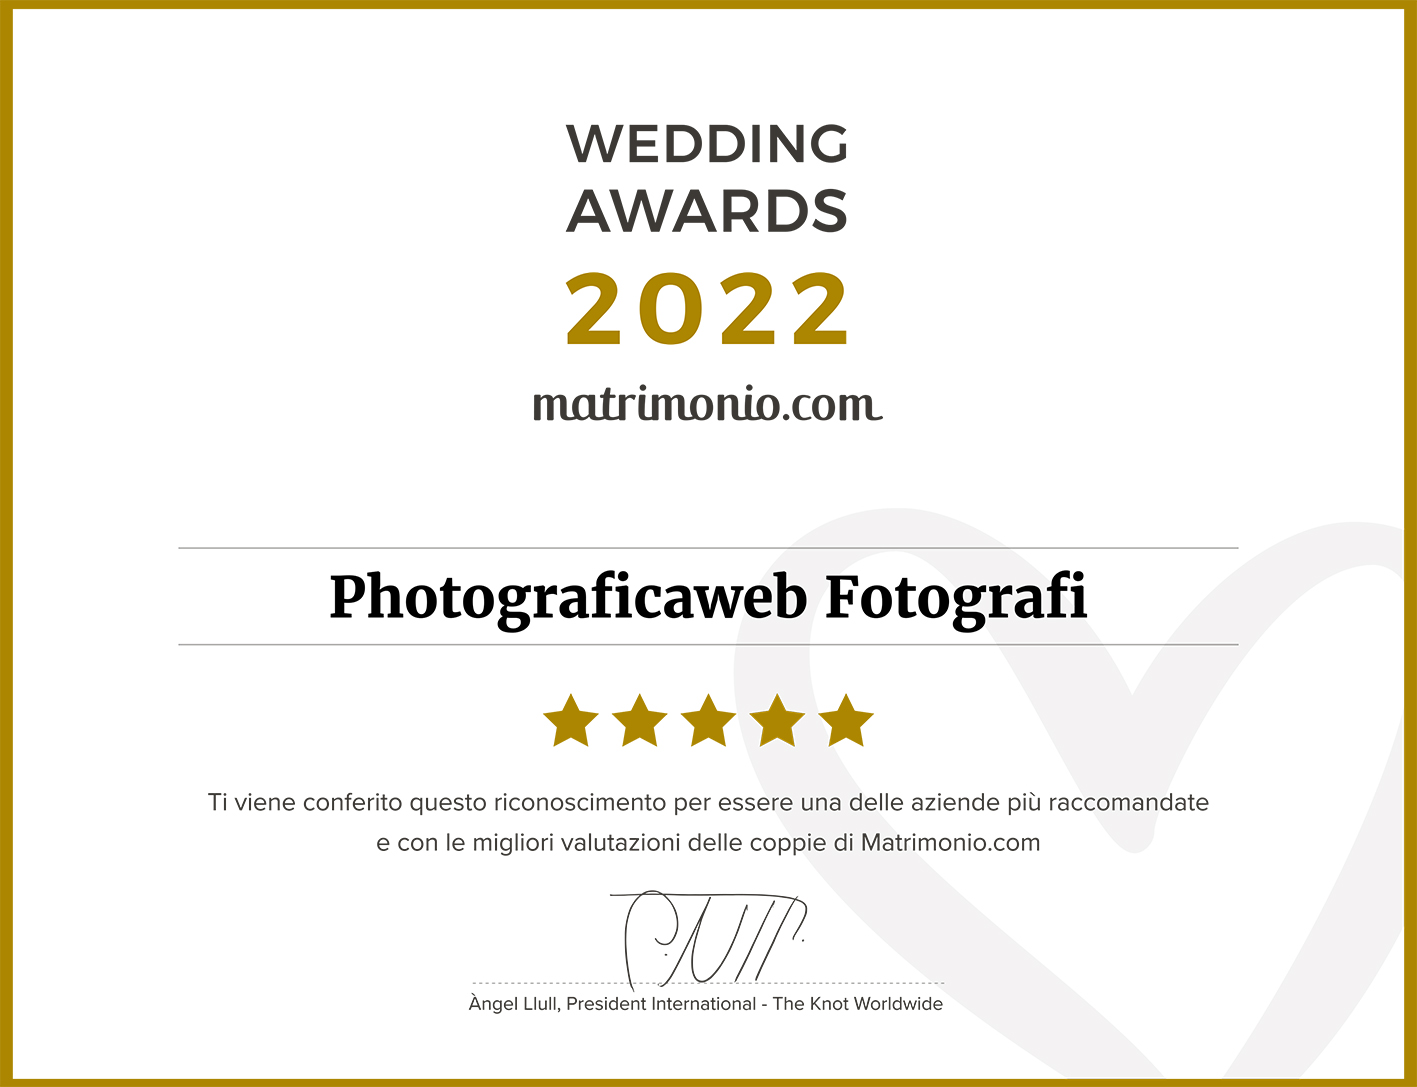 Wedding Awards Photograficaweb 2022